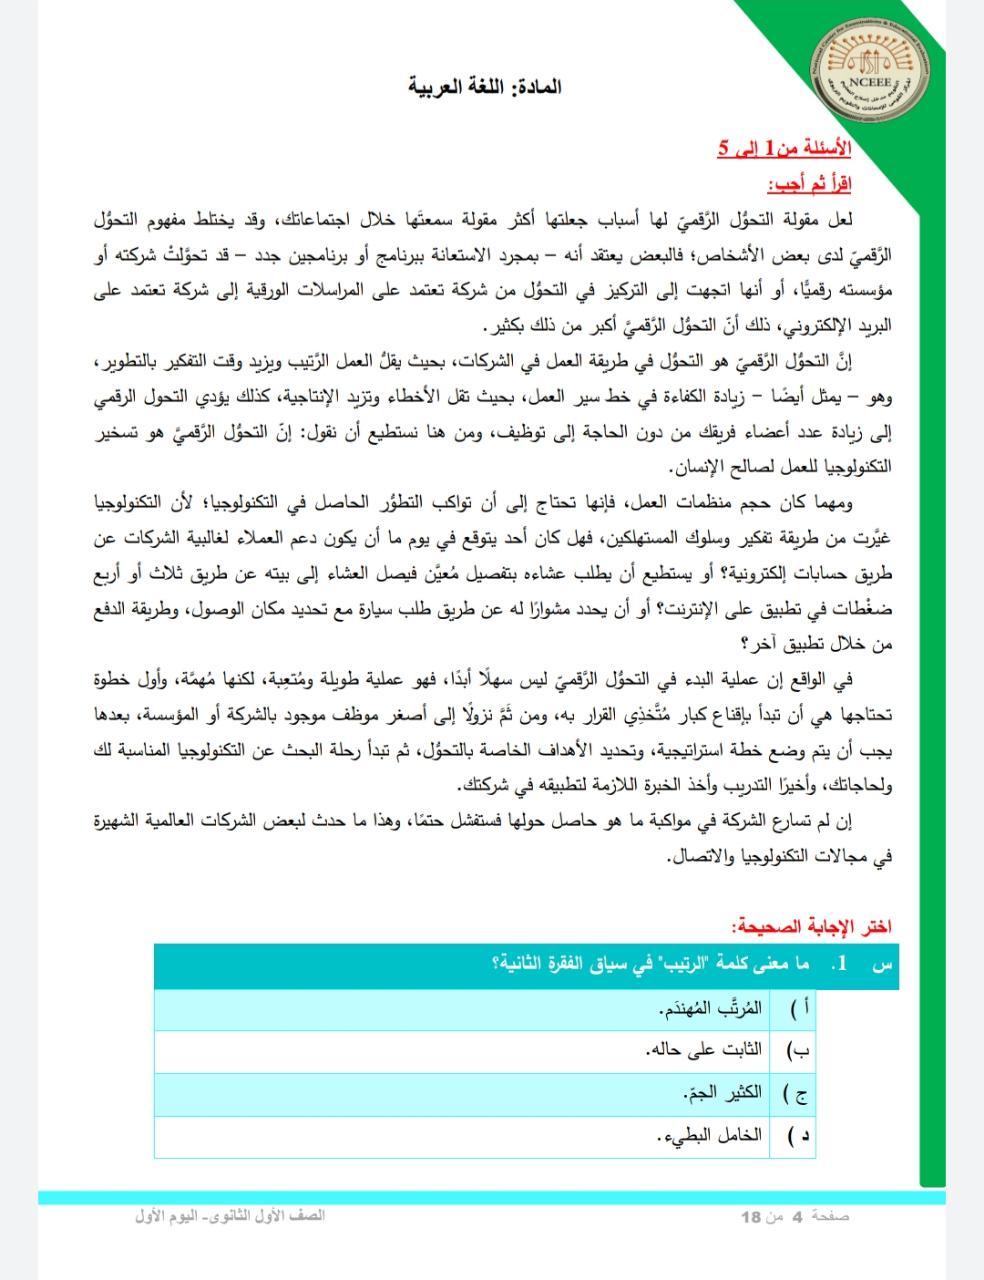 نماذج استرشادية في مادة اللغة العربية للصف الأول الثانوي امتحان شهر أبريل 2021